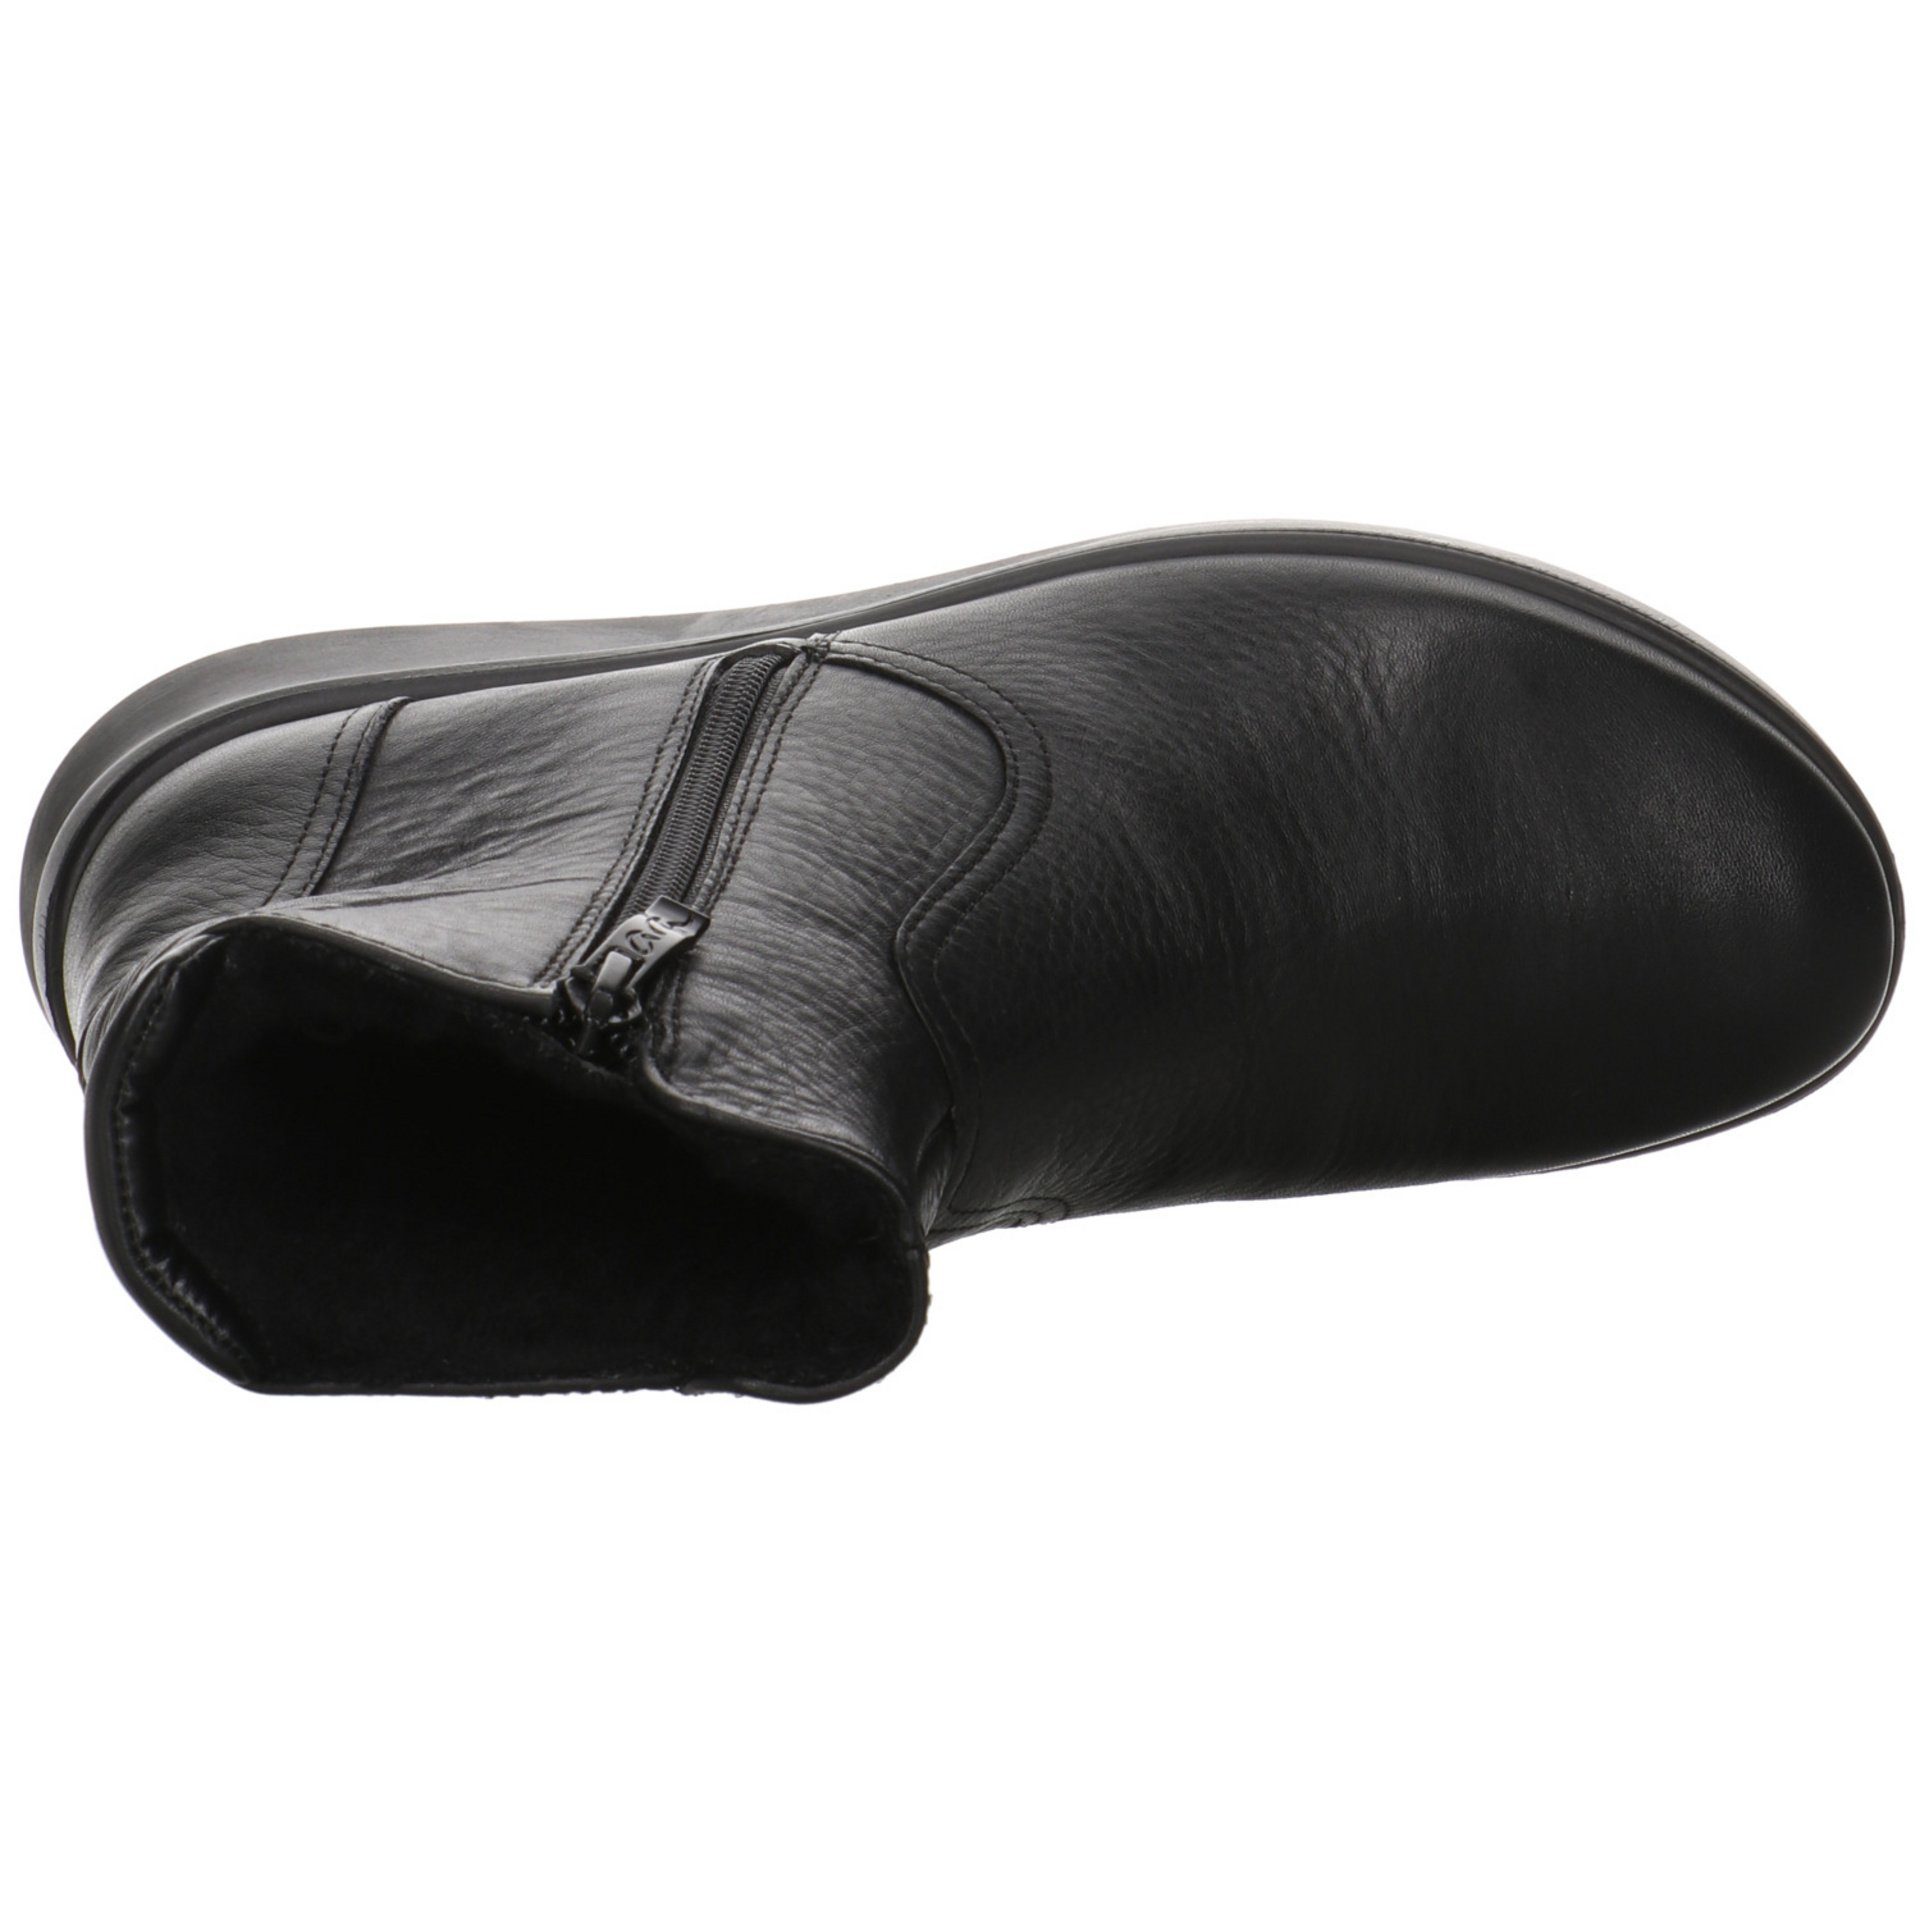 046880 schwarz Stiefel Stiefelette Stiefelette Ara Schuhe Damen Glattleder Toronto